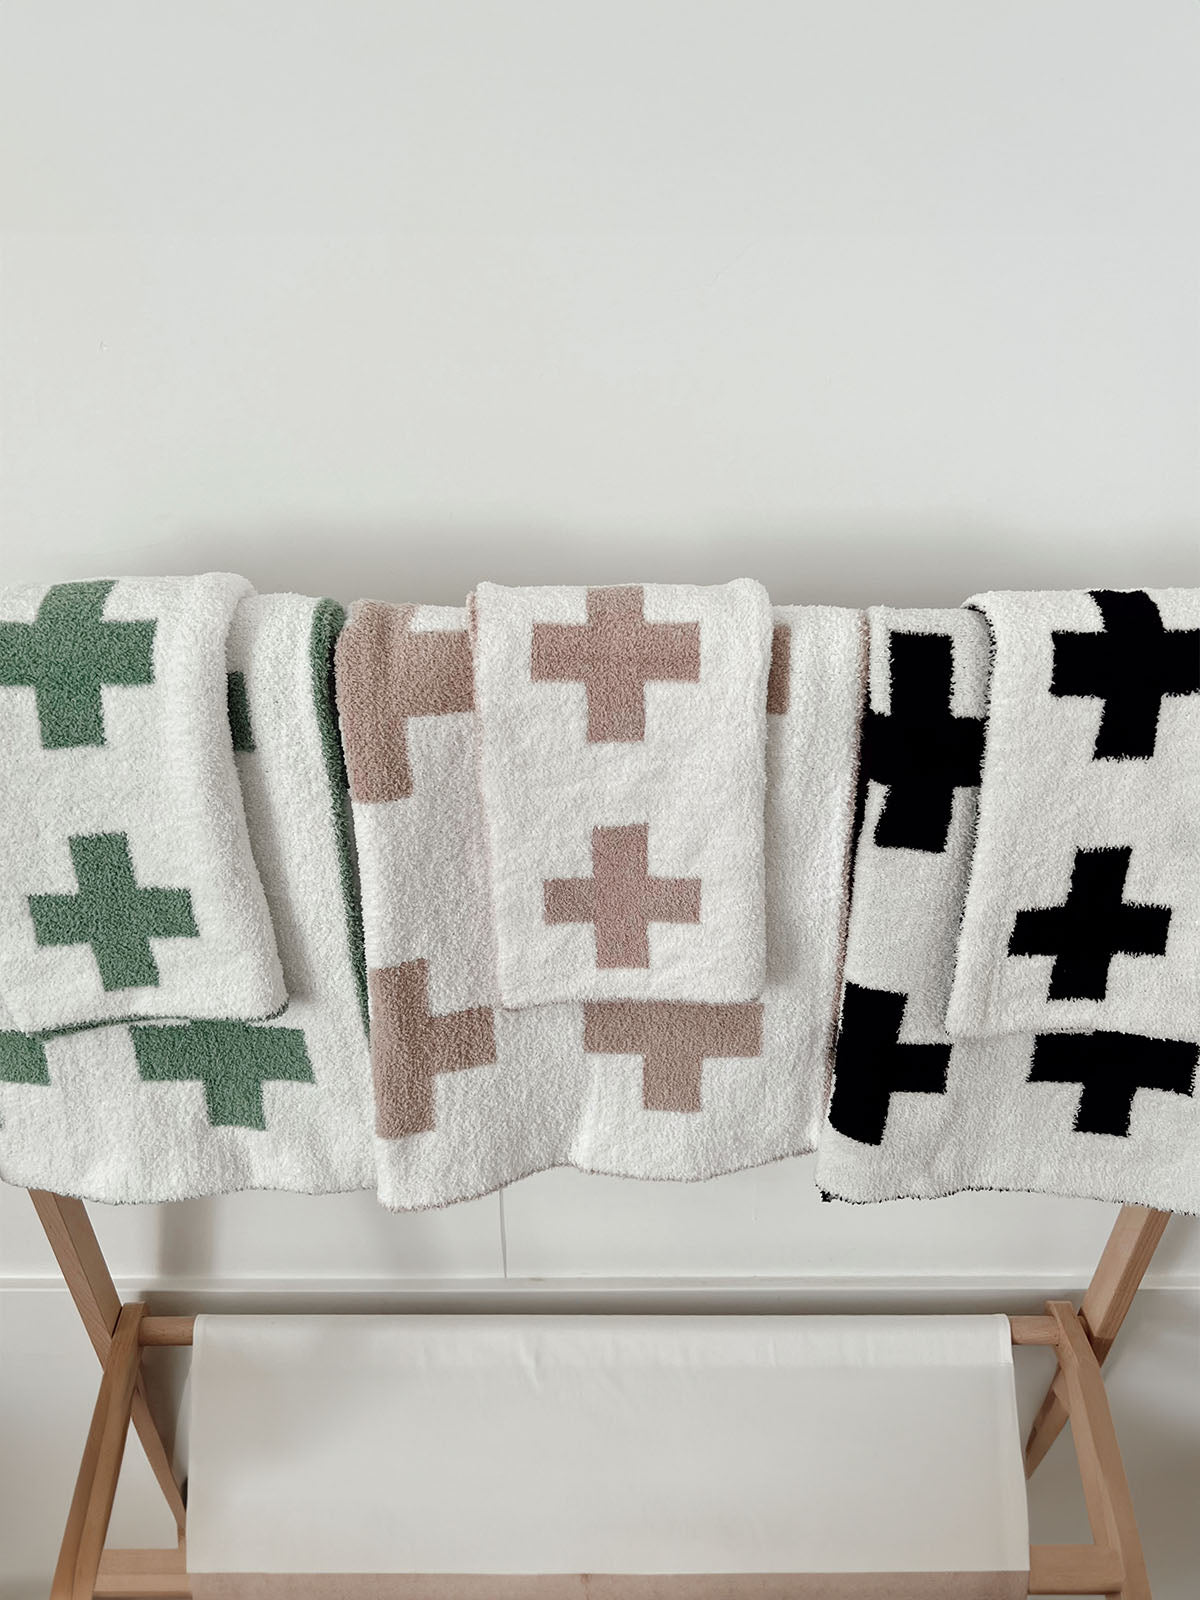 Phufy® Bliss Mini Blanket, Black/White Cross